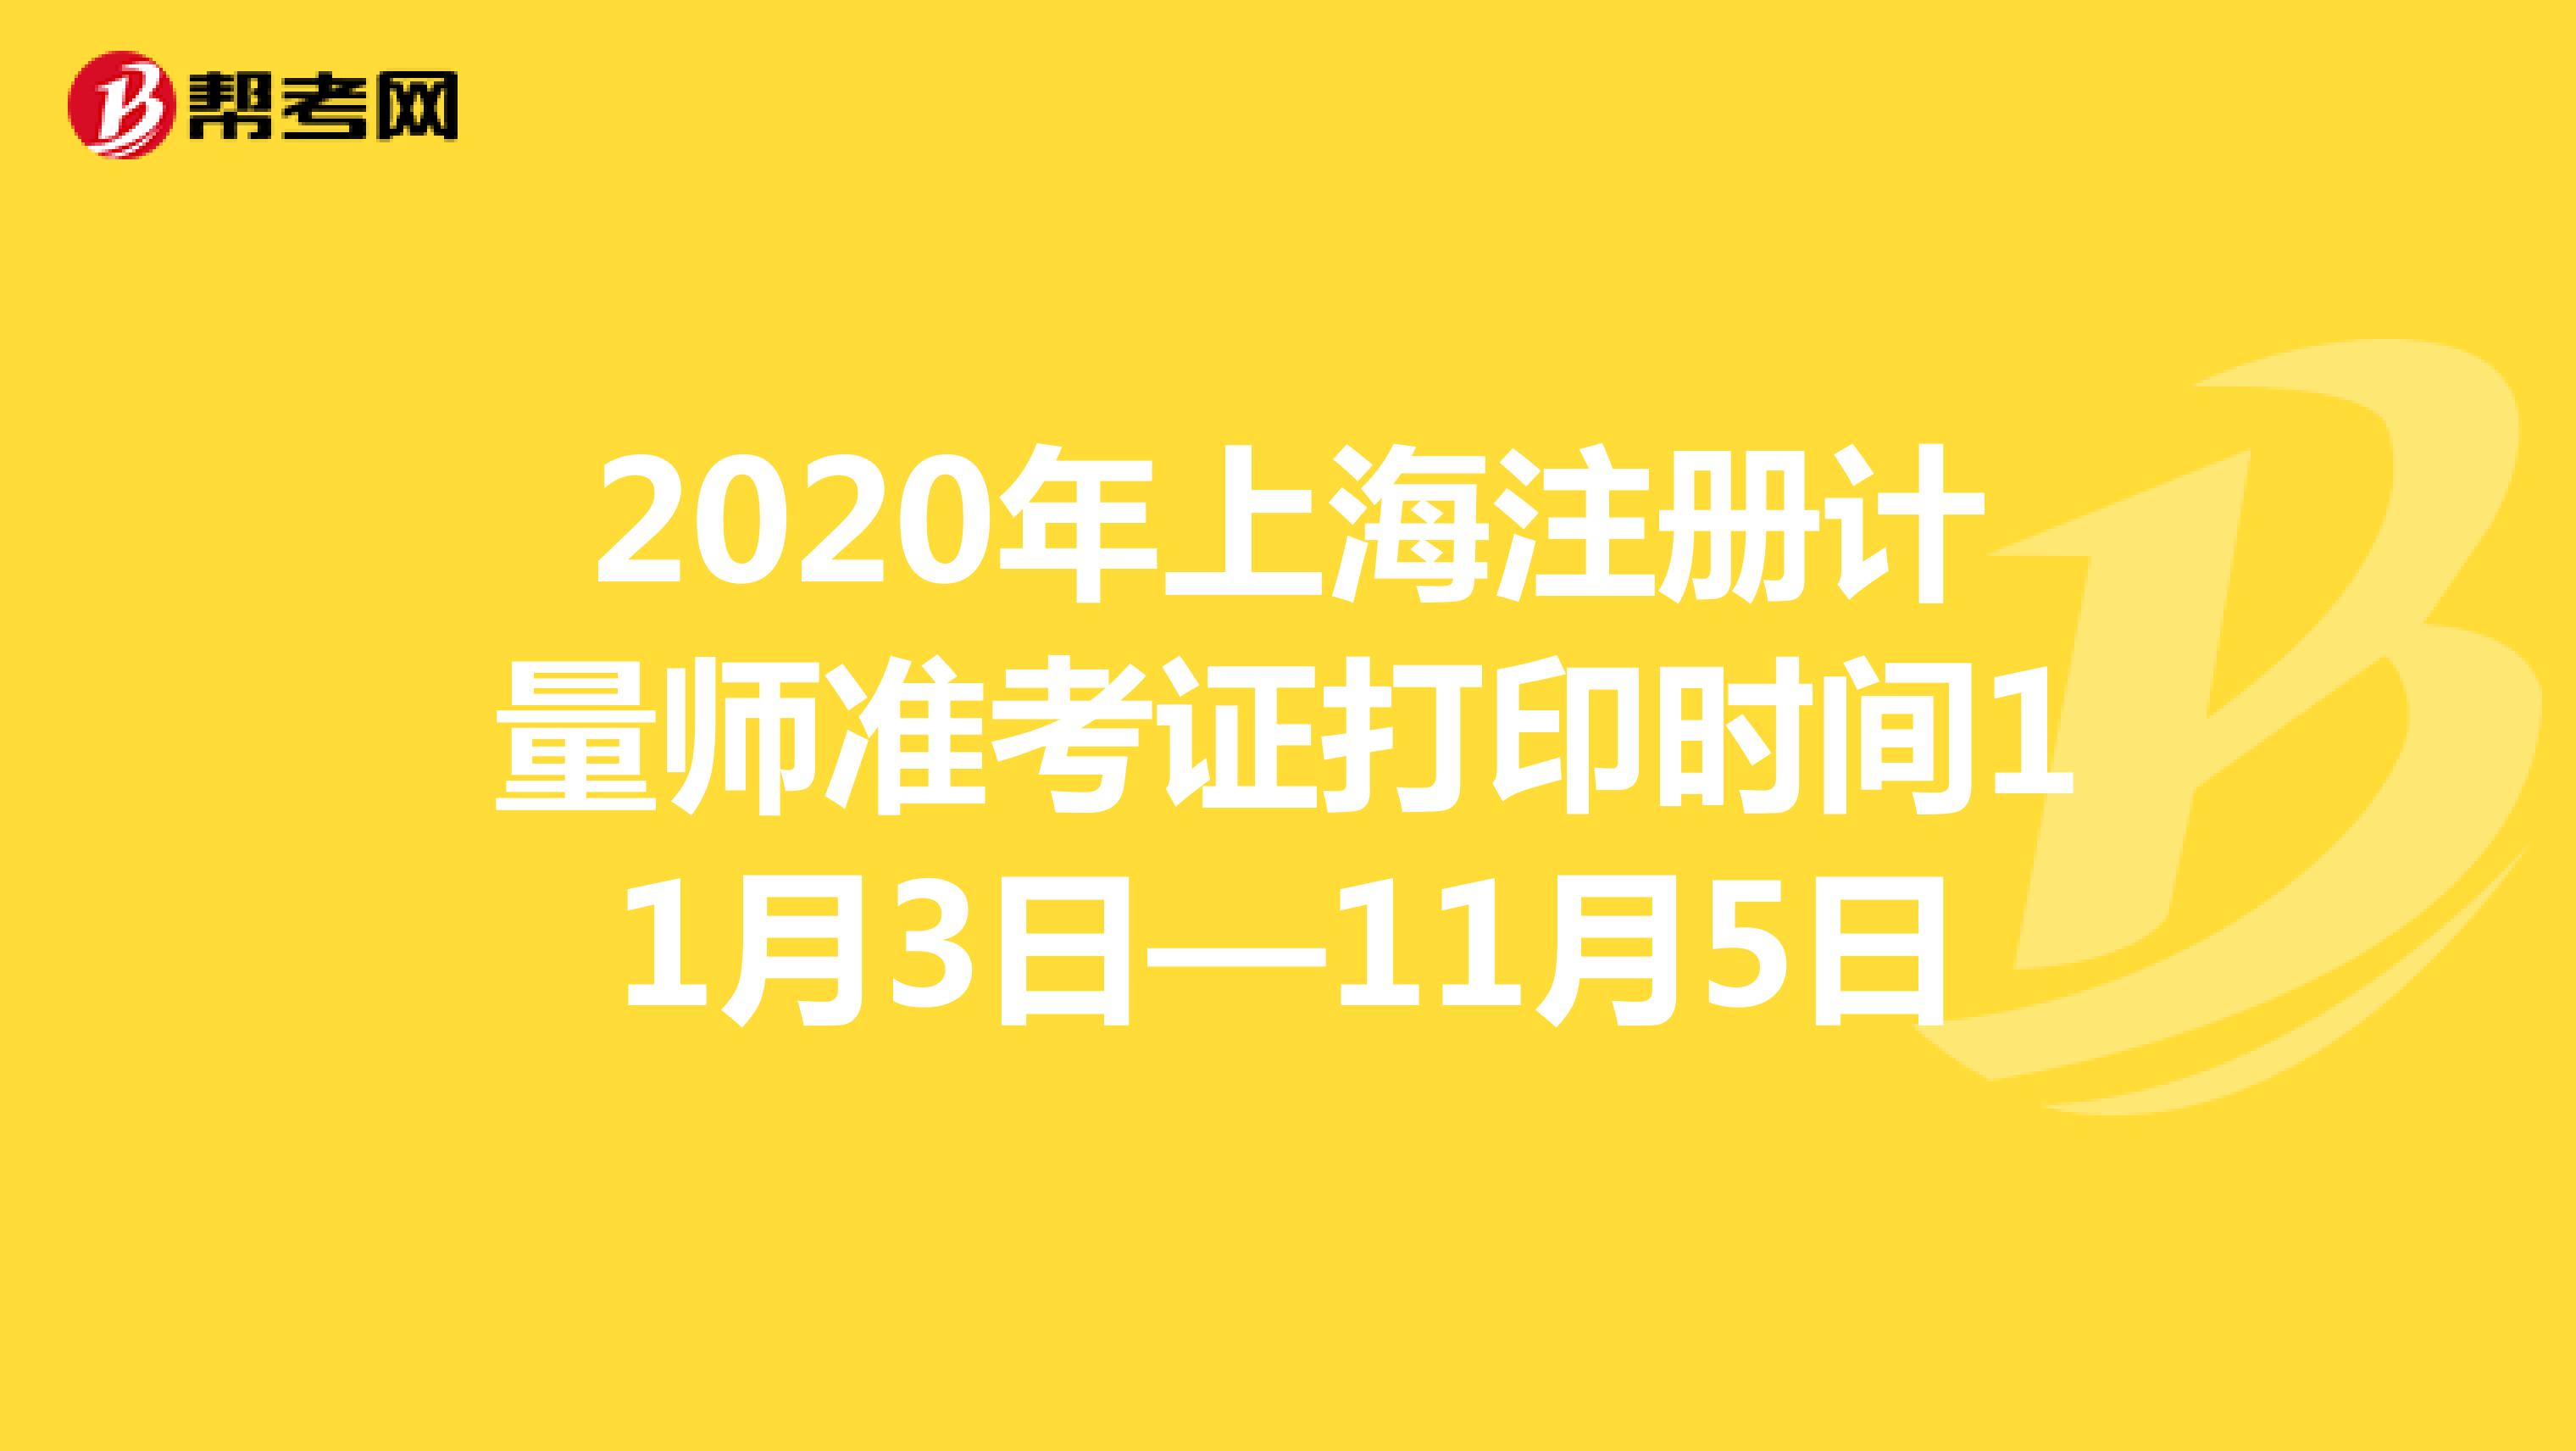 2020年上海注册计量师准考证打印时间11月3日—11月5日